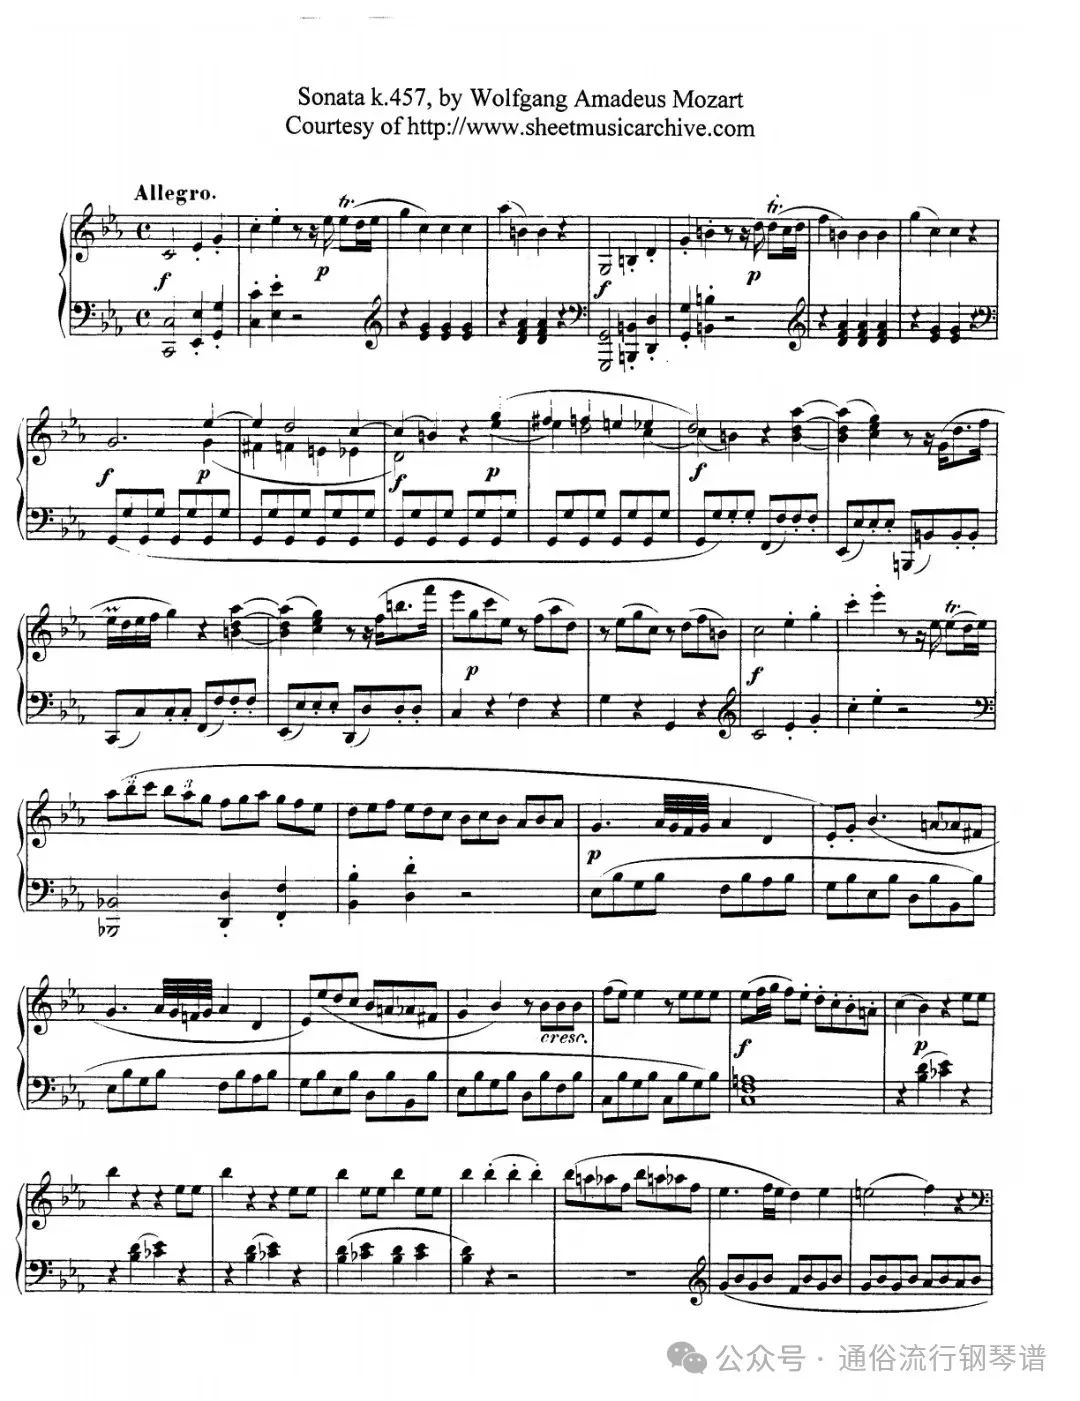 【古钢琴】莫扎特-第十四钢琴奏鸣曲 K